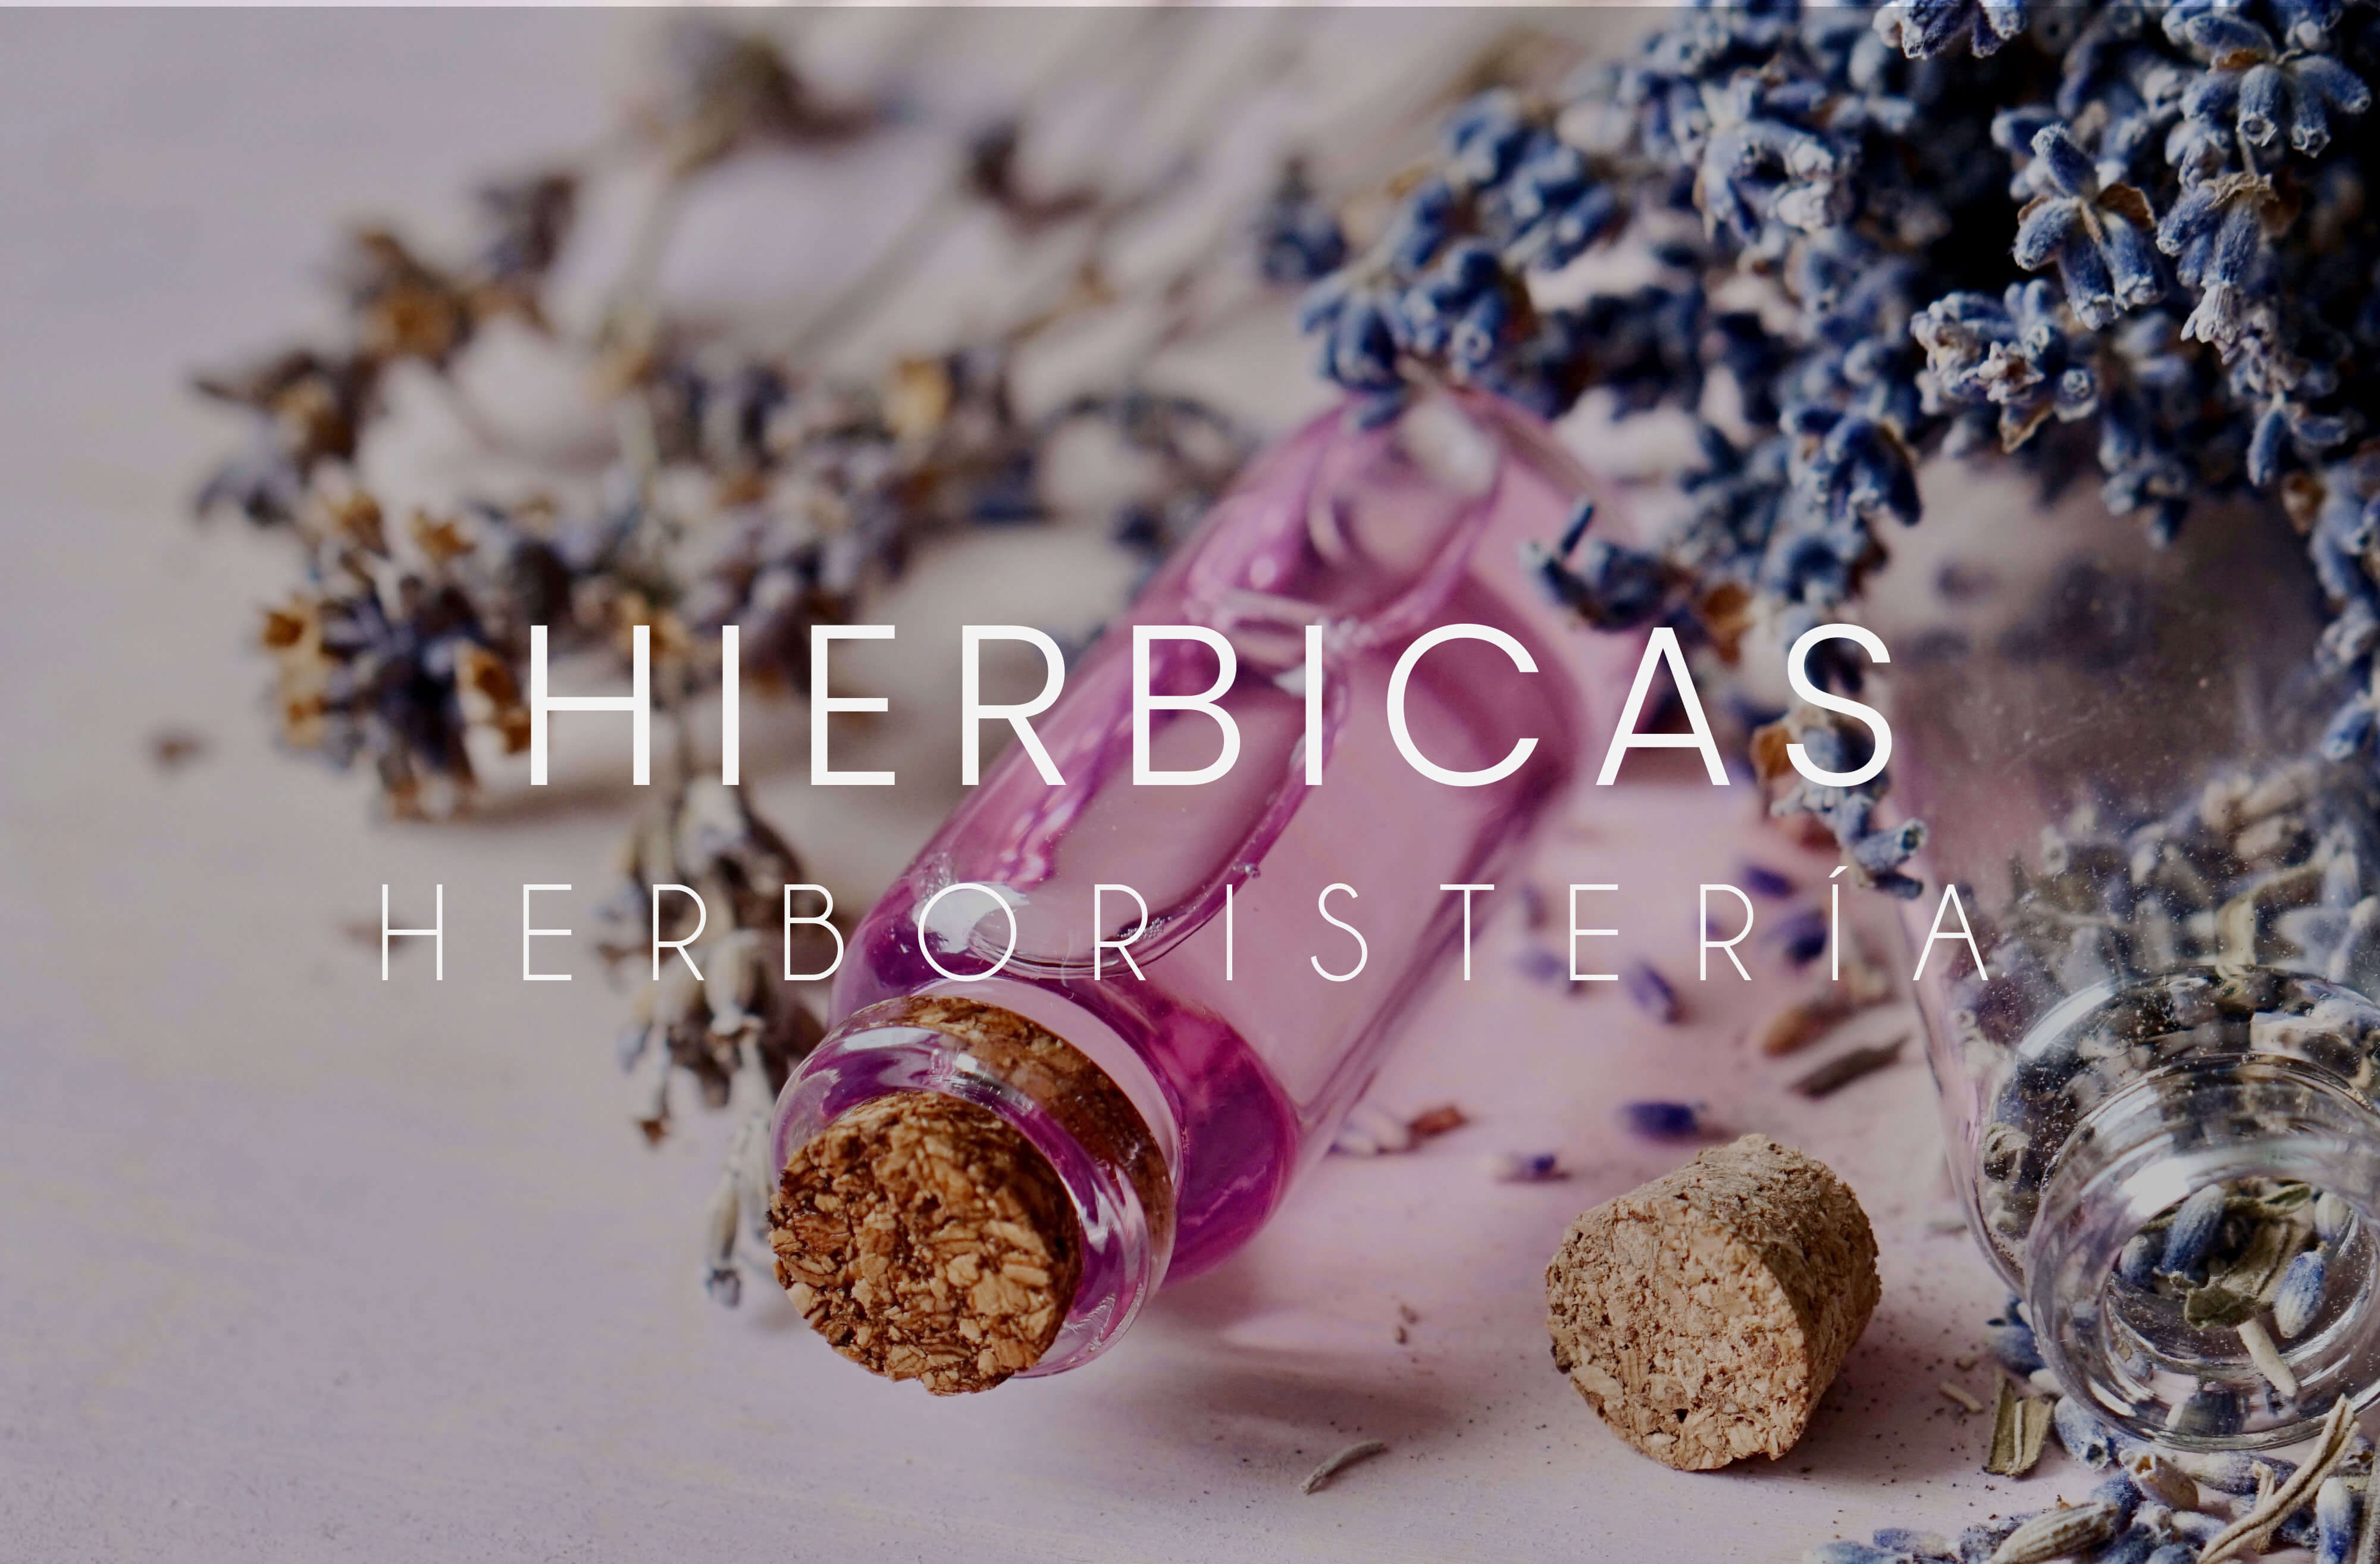 herboristeria-hierbicas-utebo-empresas